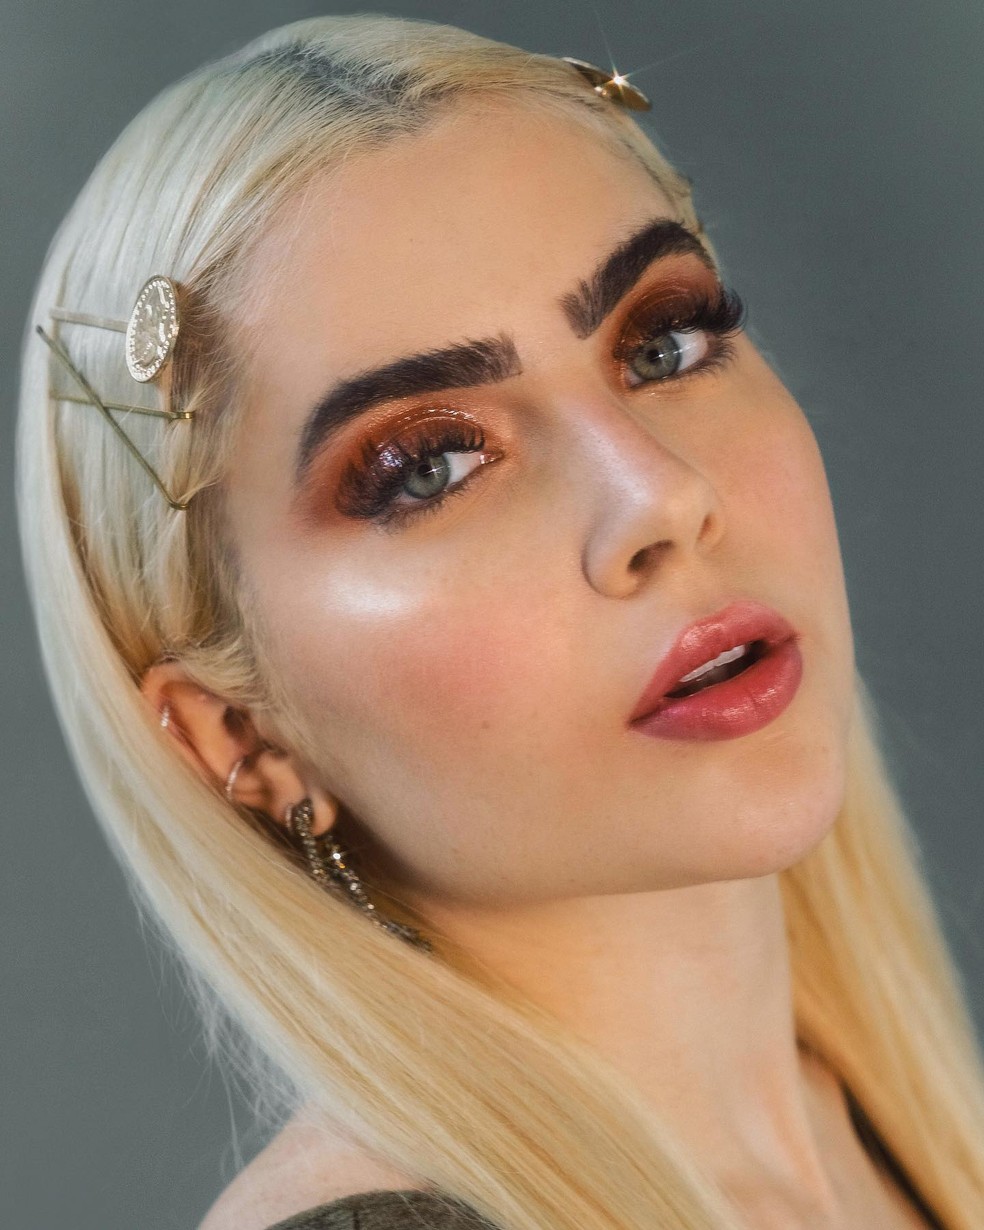 Maquiagem de Jade Picon no 'BBB 22': beauty artist dá dicas para